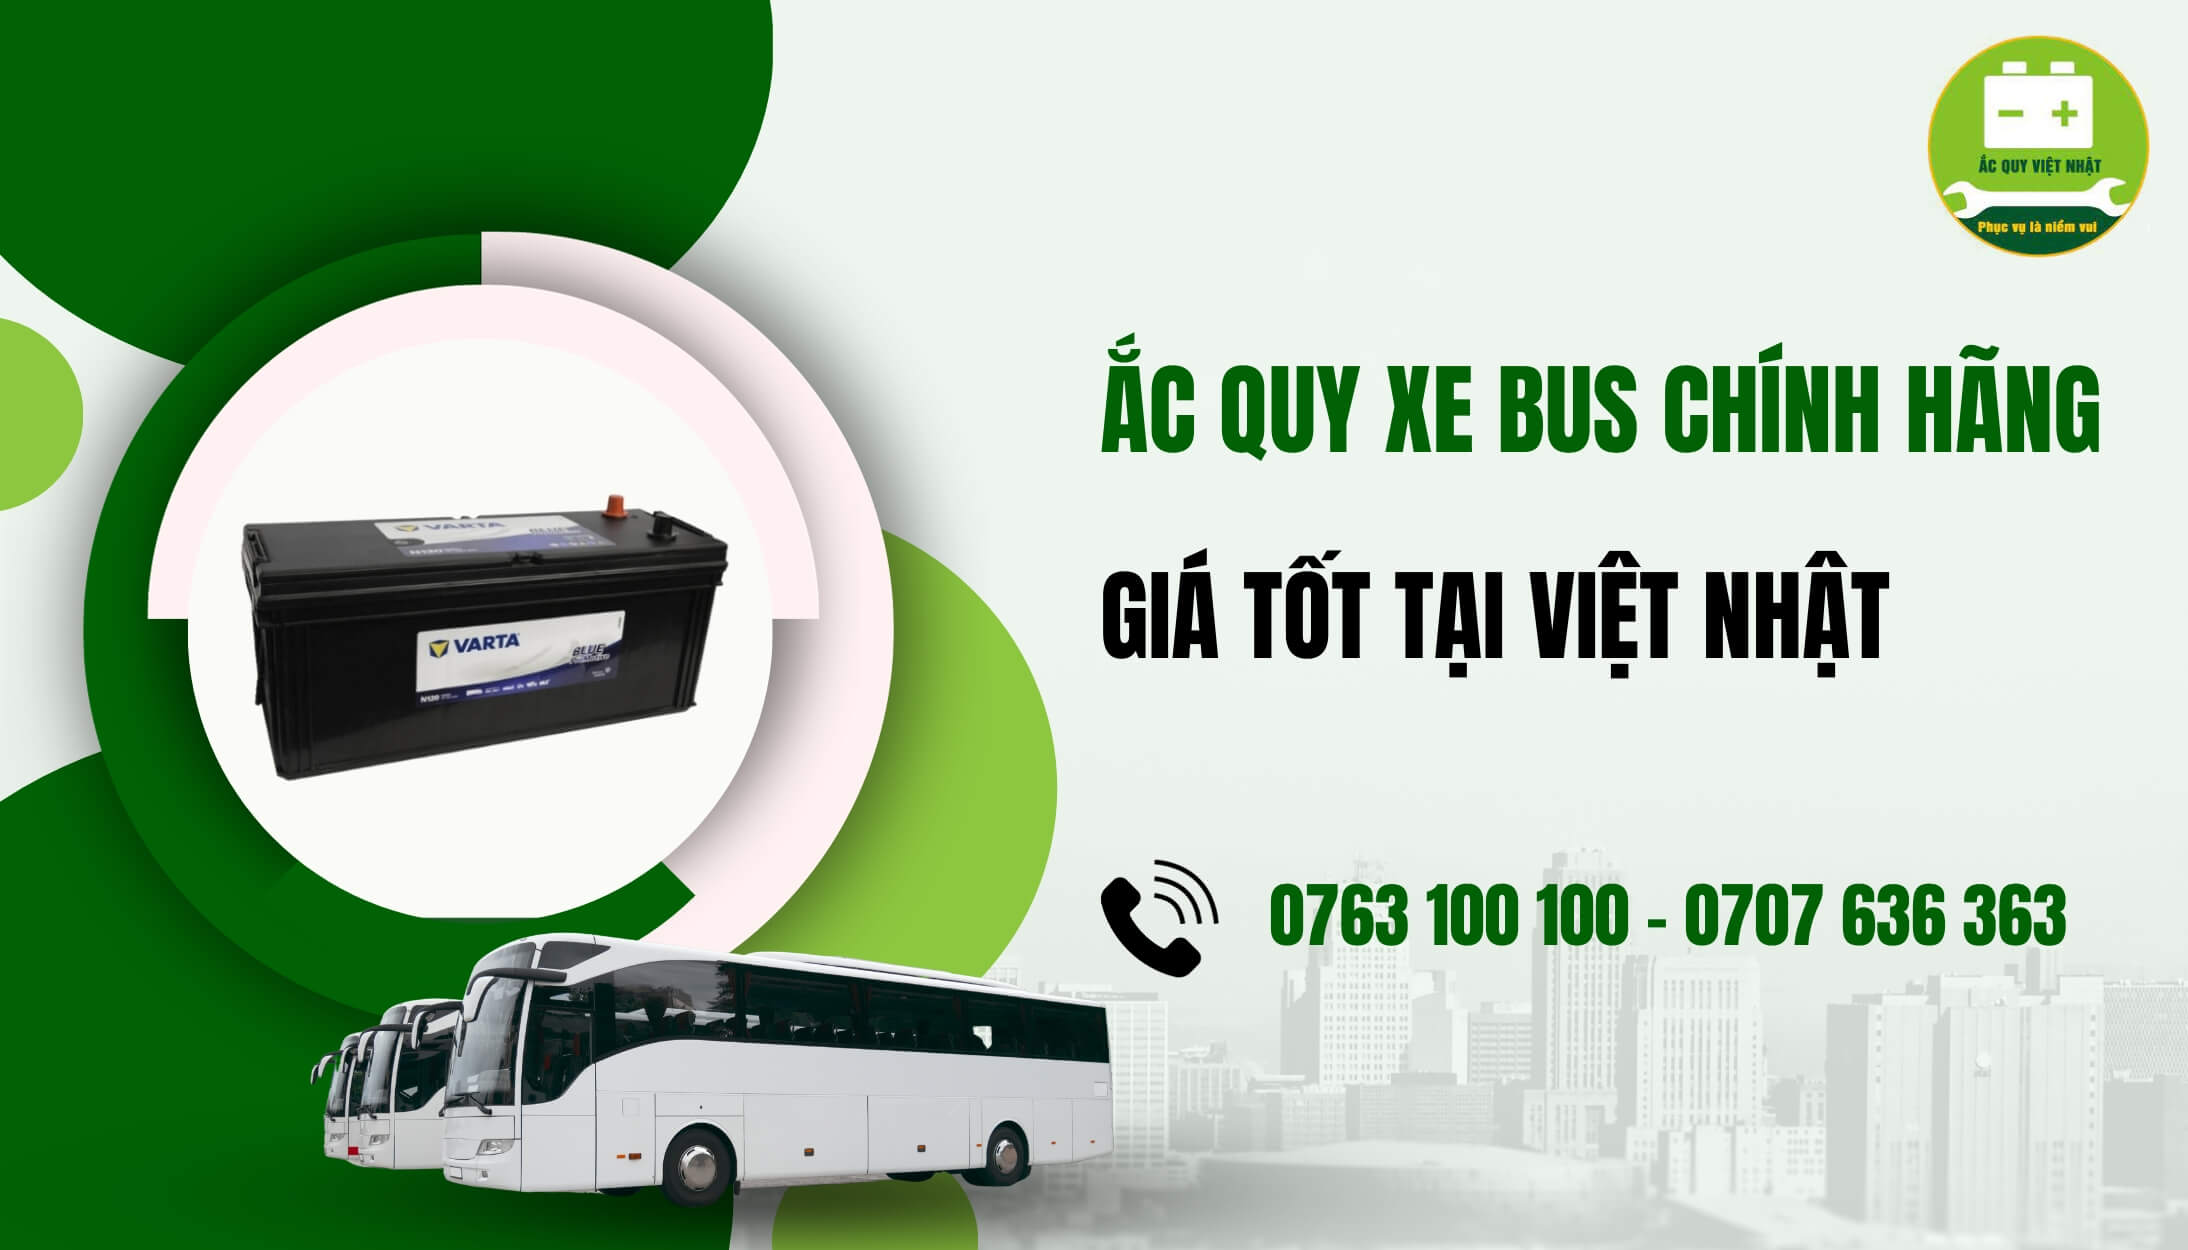 Mua ắc quy xe bus chính hãng tại Việt Nhật